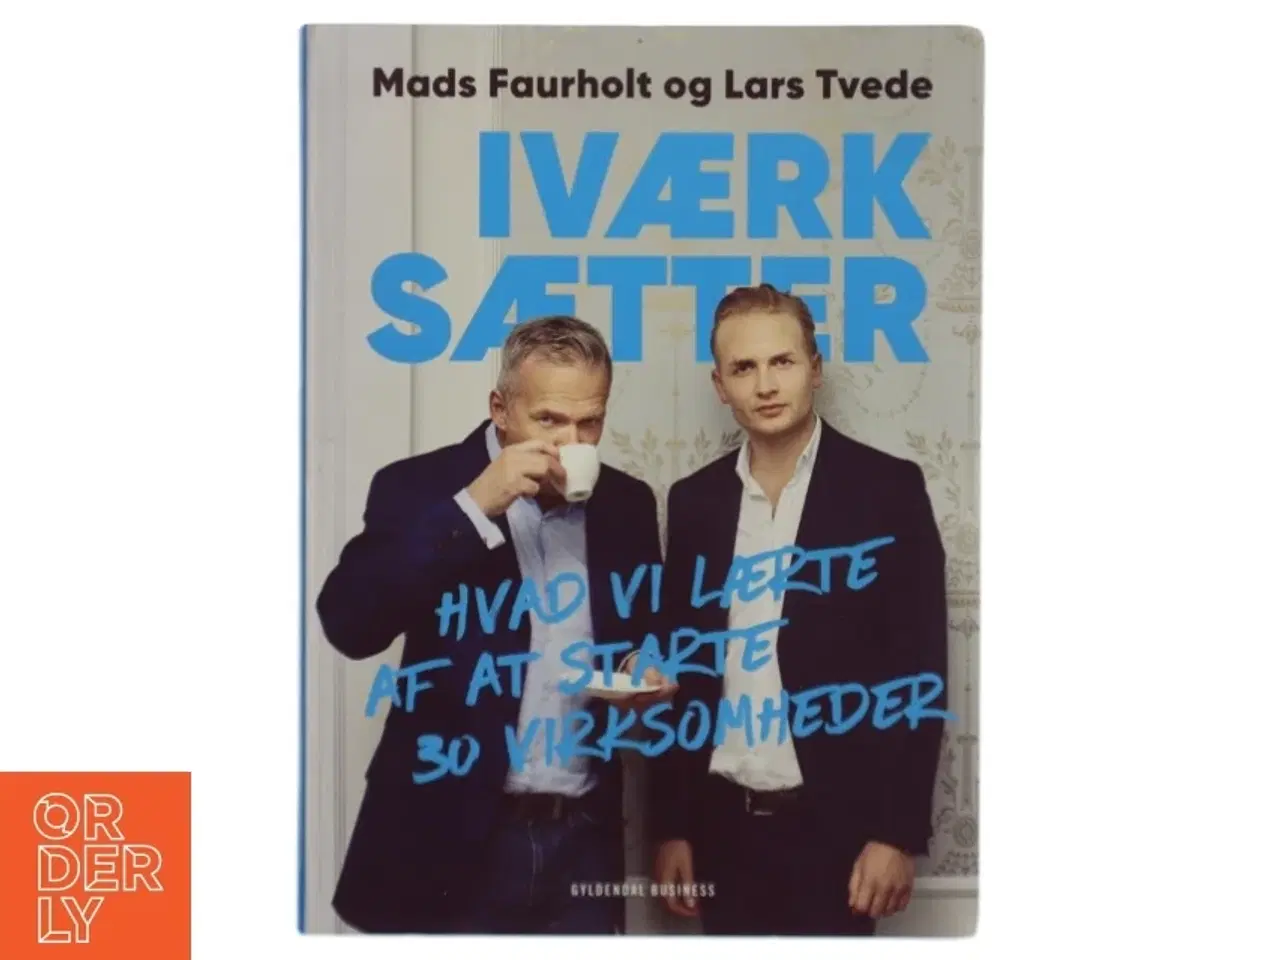 Billede 1 - Iværksætter : hvad vi lærte af at starte 30 virksomheder af Mads Faurholt og Lars Tvede (Bog)